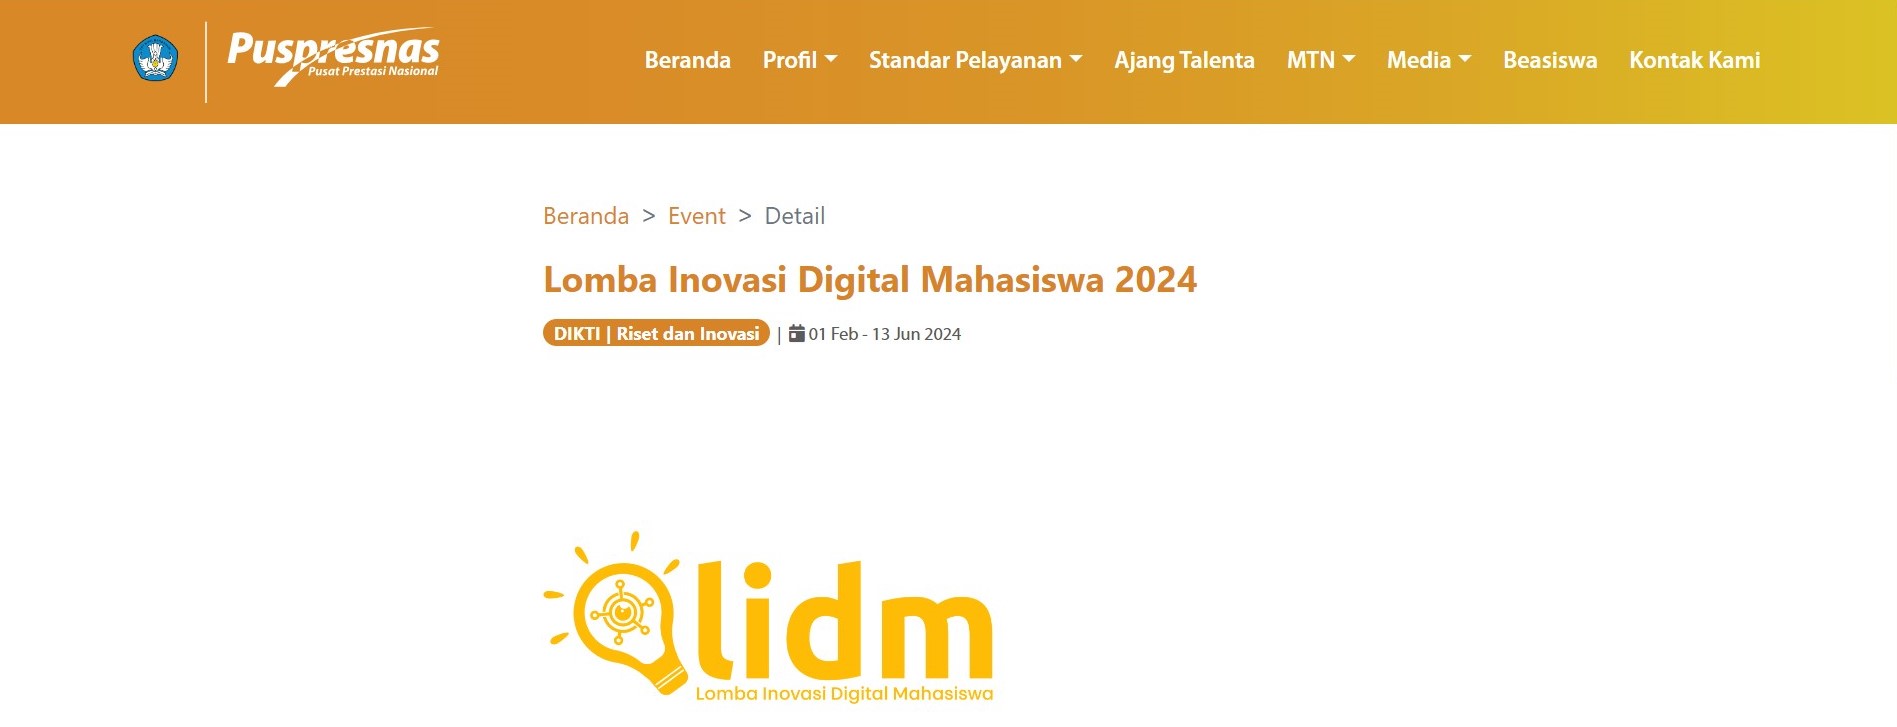 Lomba Inovasi Digital Mahasiswa 2024